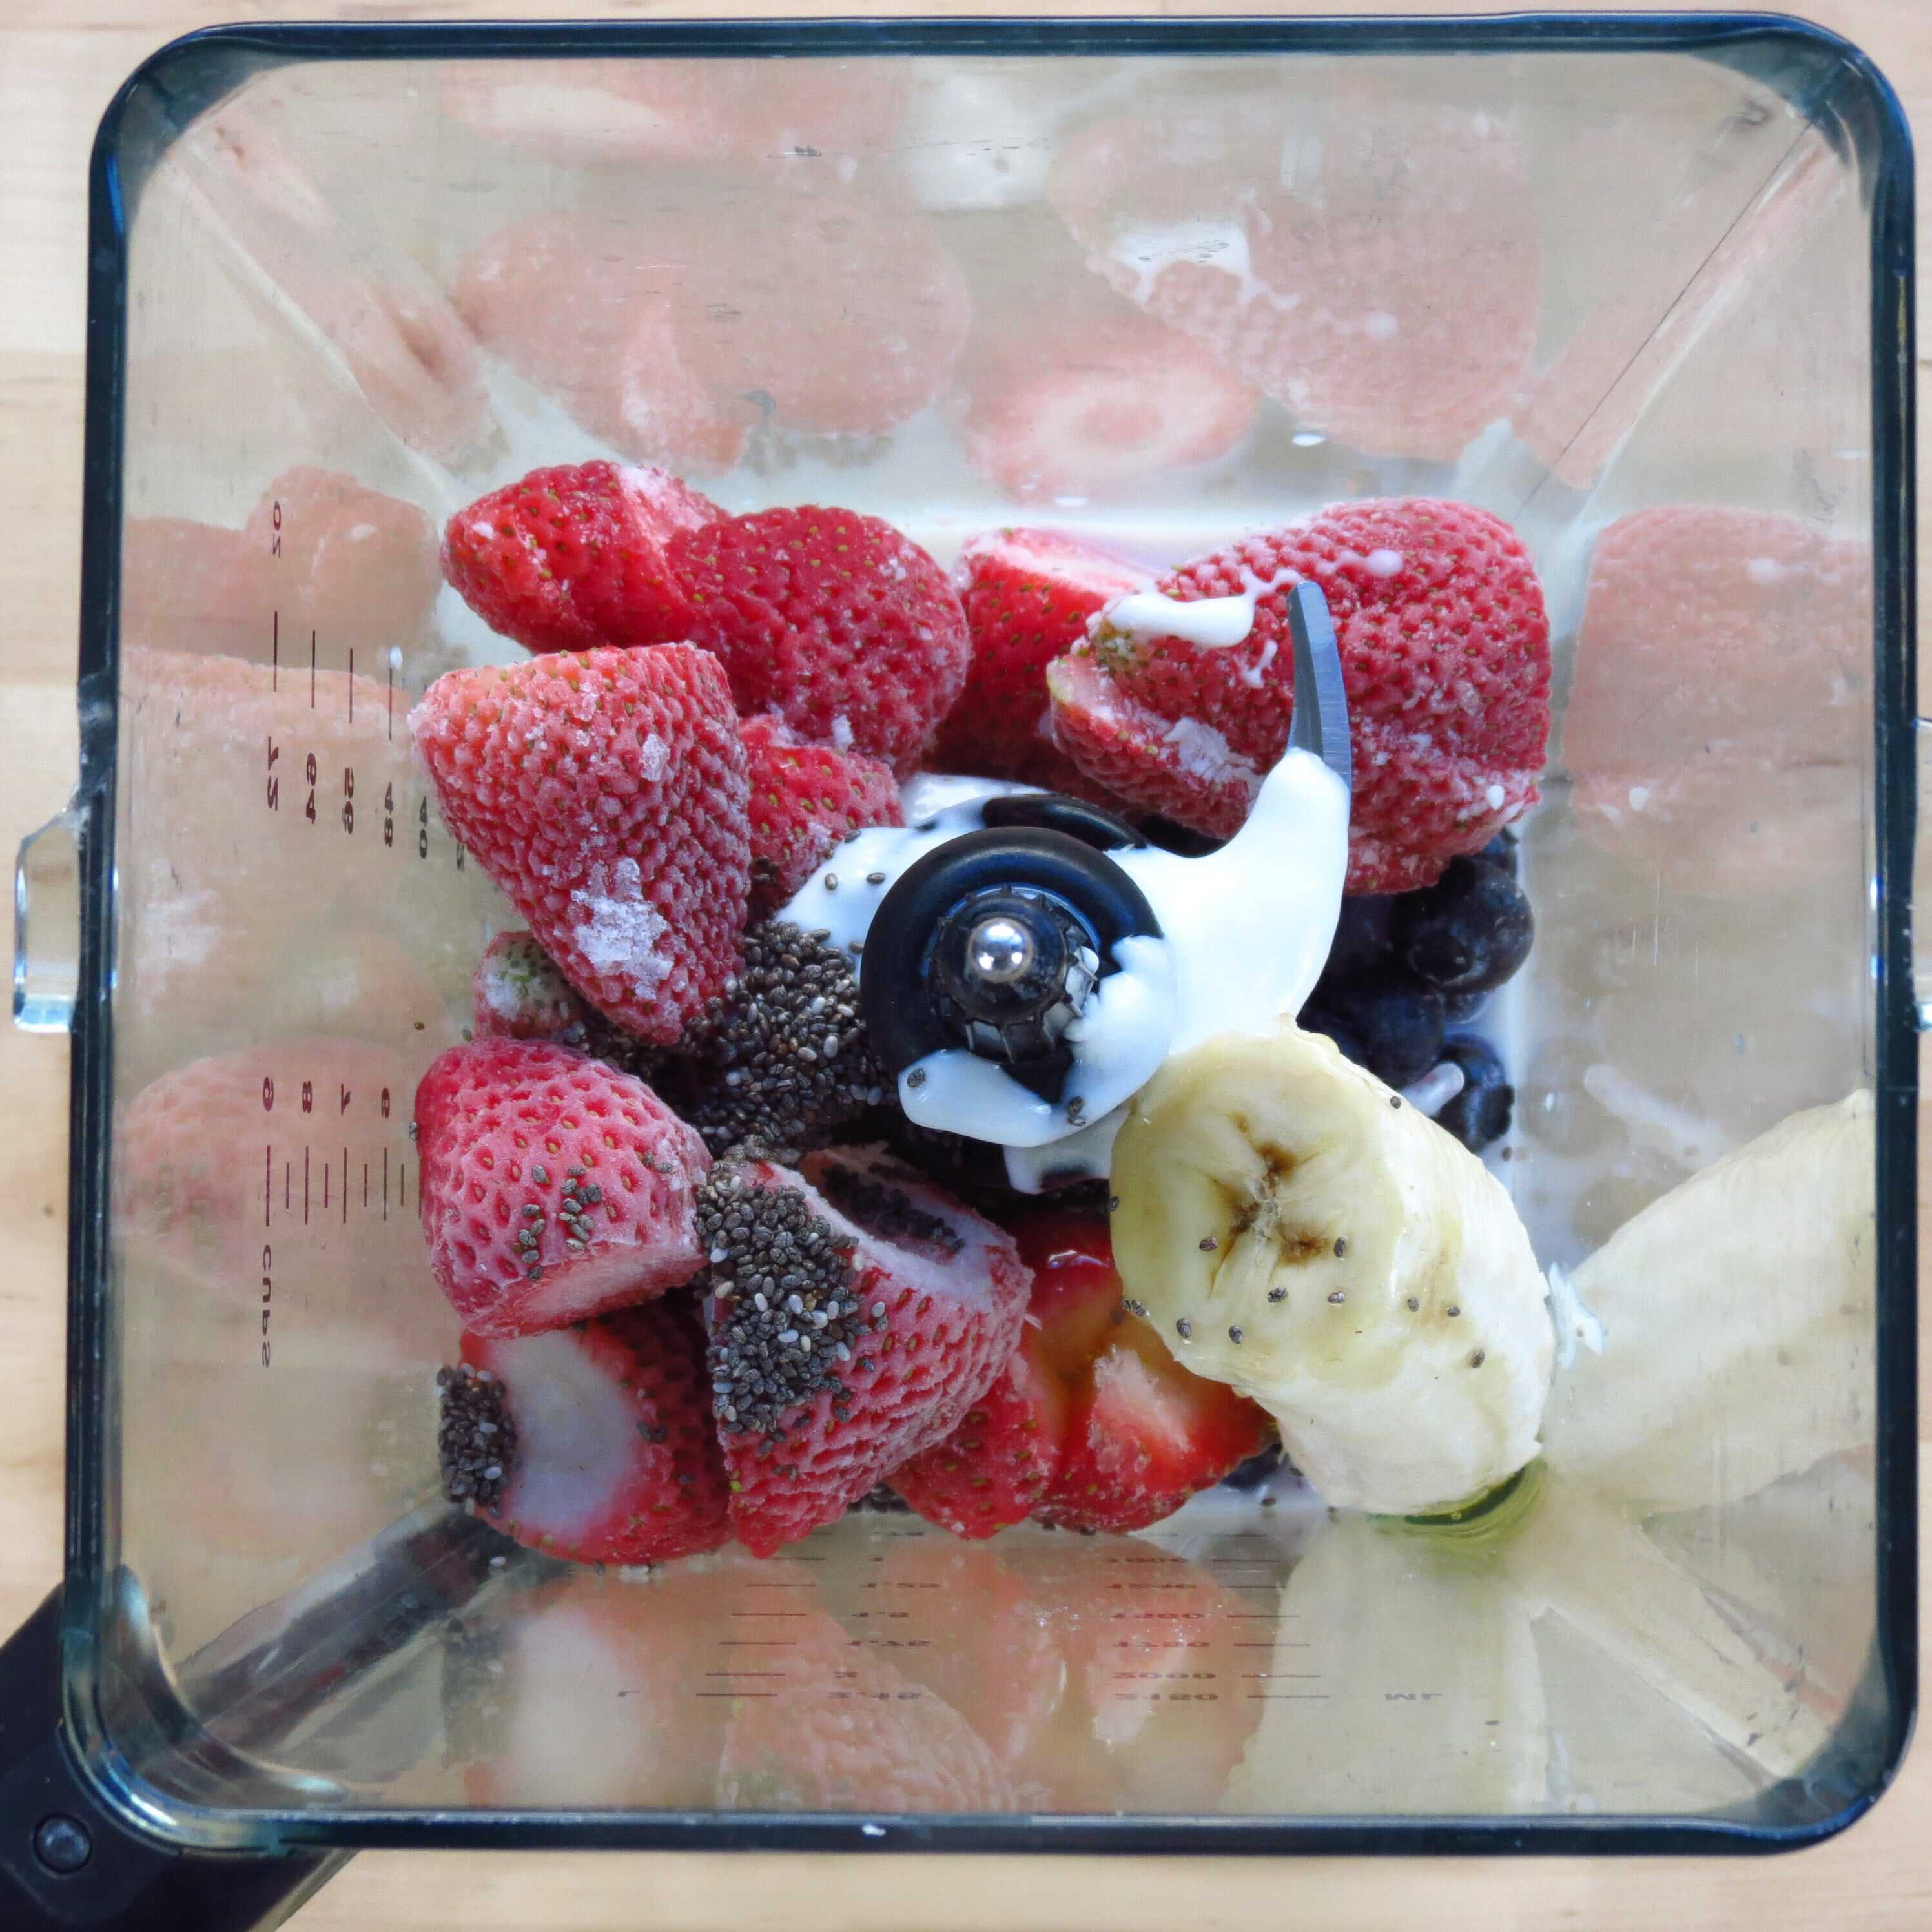 Blending strawberries, blueberries, banana, yogurt, milk, honey and chia seeds for Berry Banana Chia Smoothie